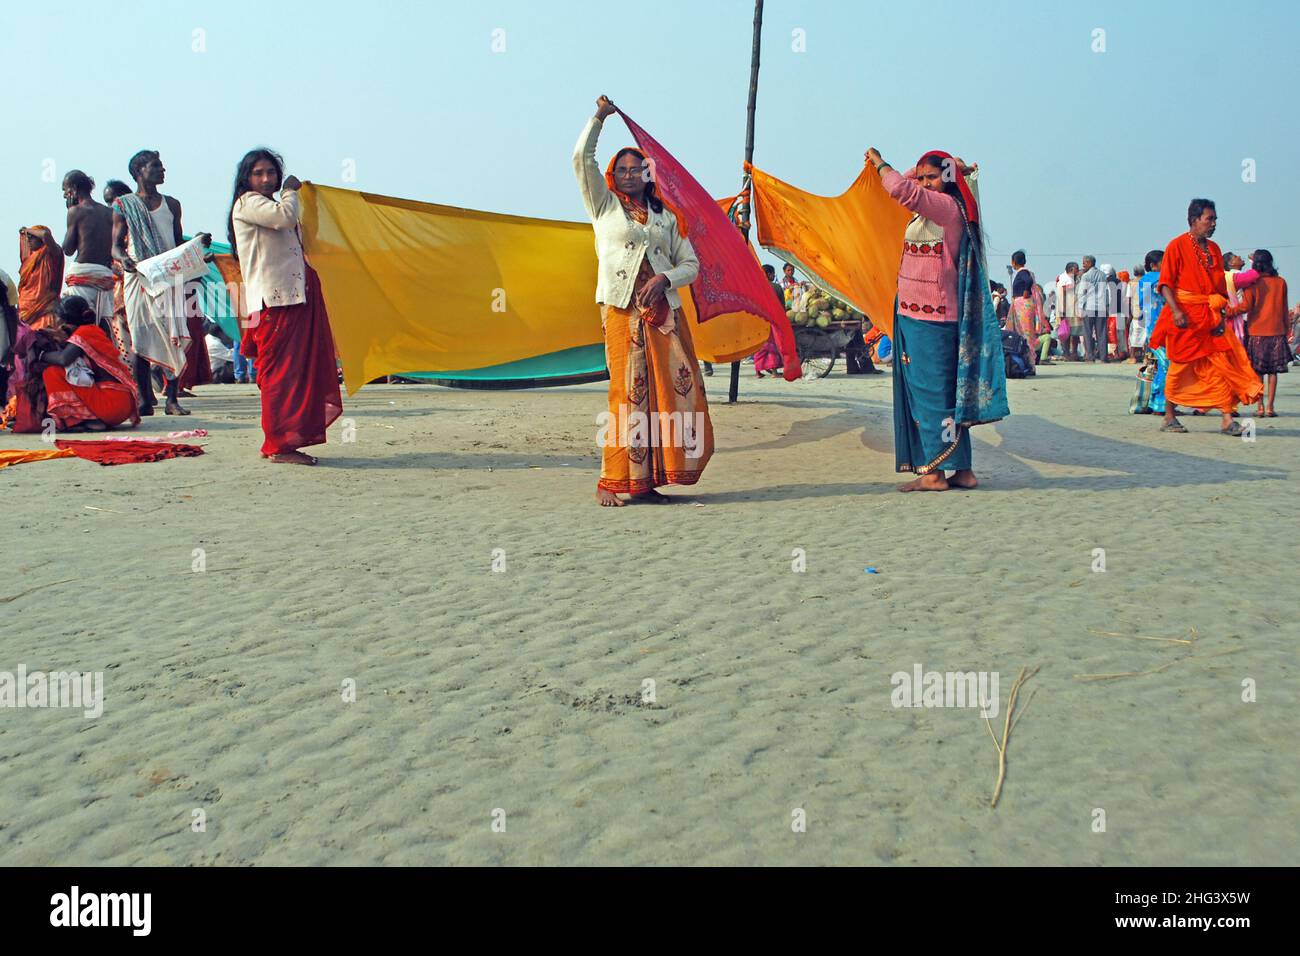 Trocknen von Tüchern auf der Insel ganga sagar im Westen bengalens Stockfoto